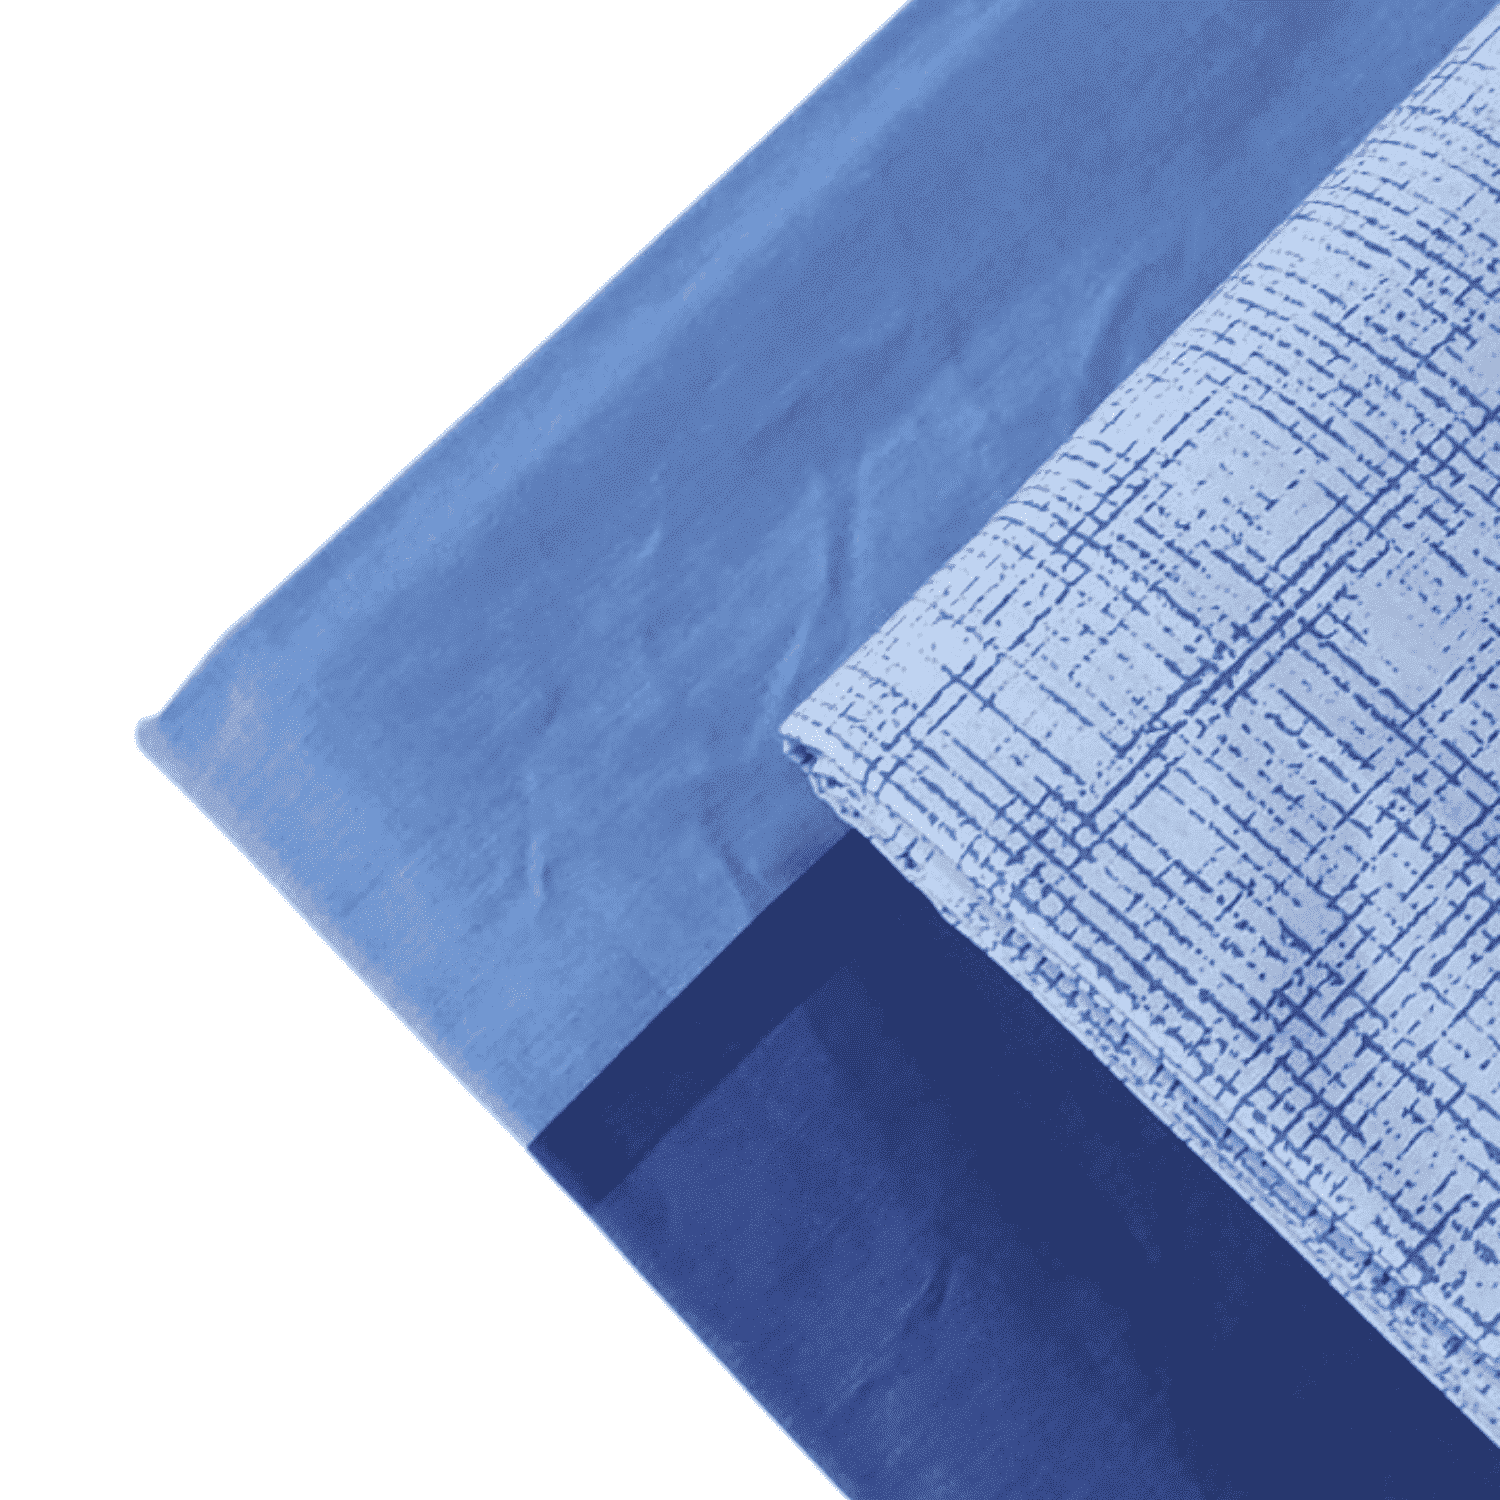 fascia-blu-completo-lenzuola-puro-cotone-made-in-italy-quadrifoglio-blu-azzurro-celeste-sfumato-fascioni-geometrico-moderno-dettaglio